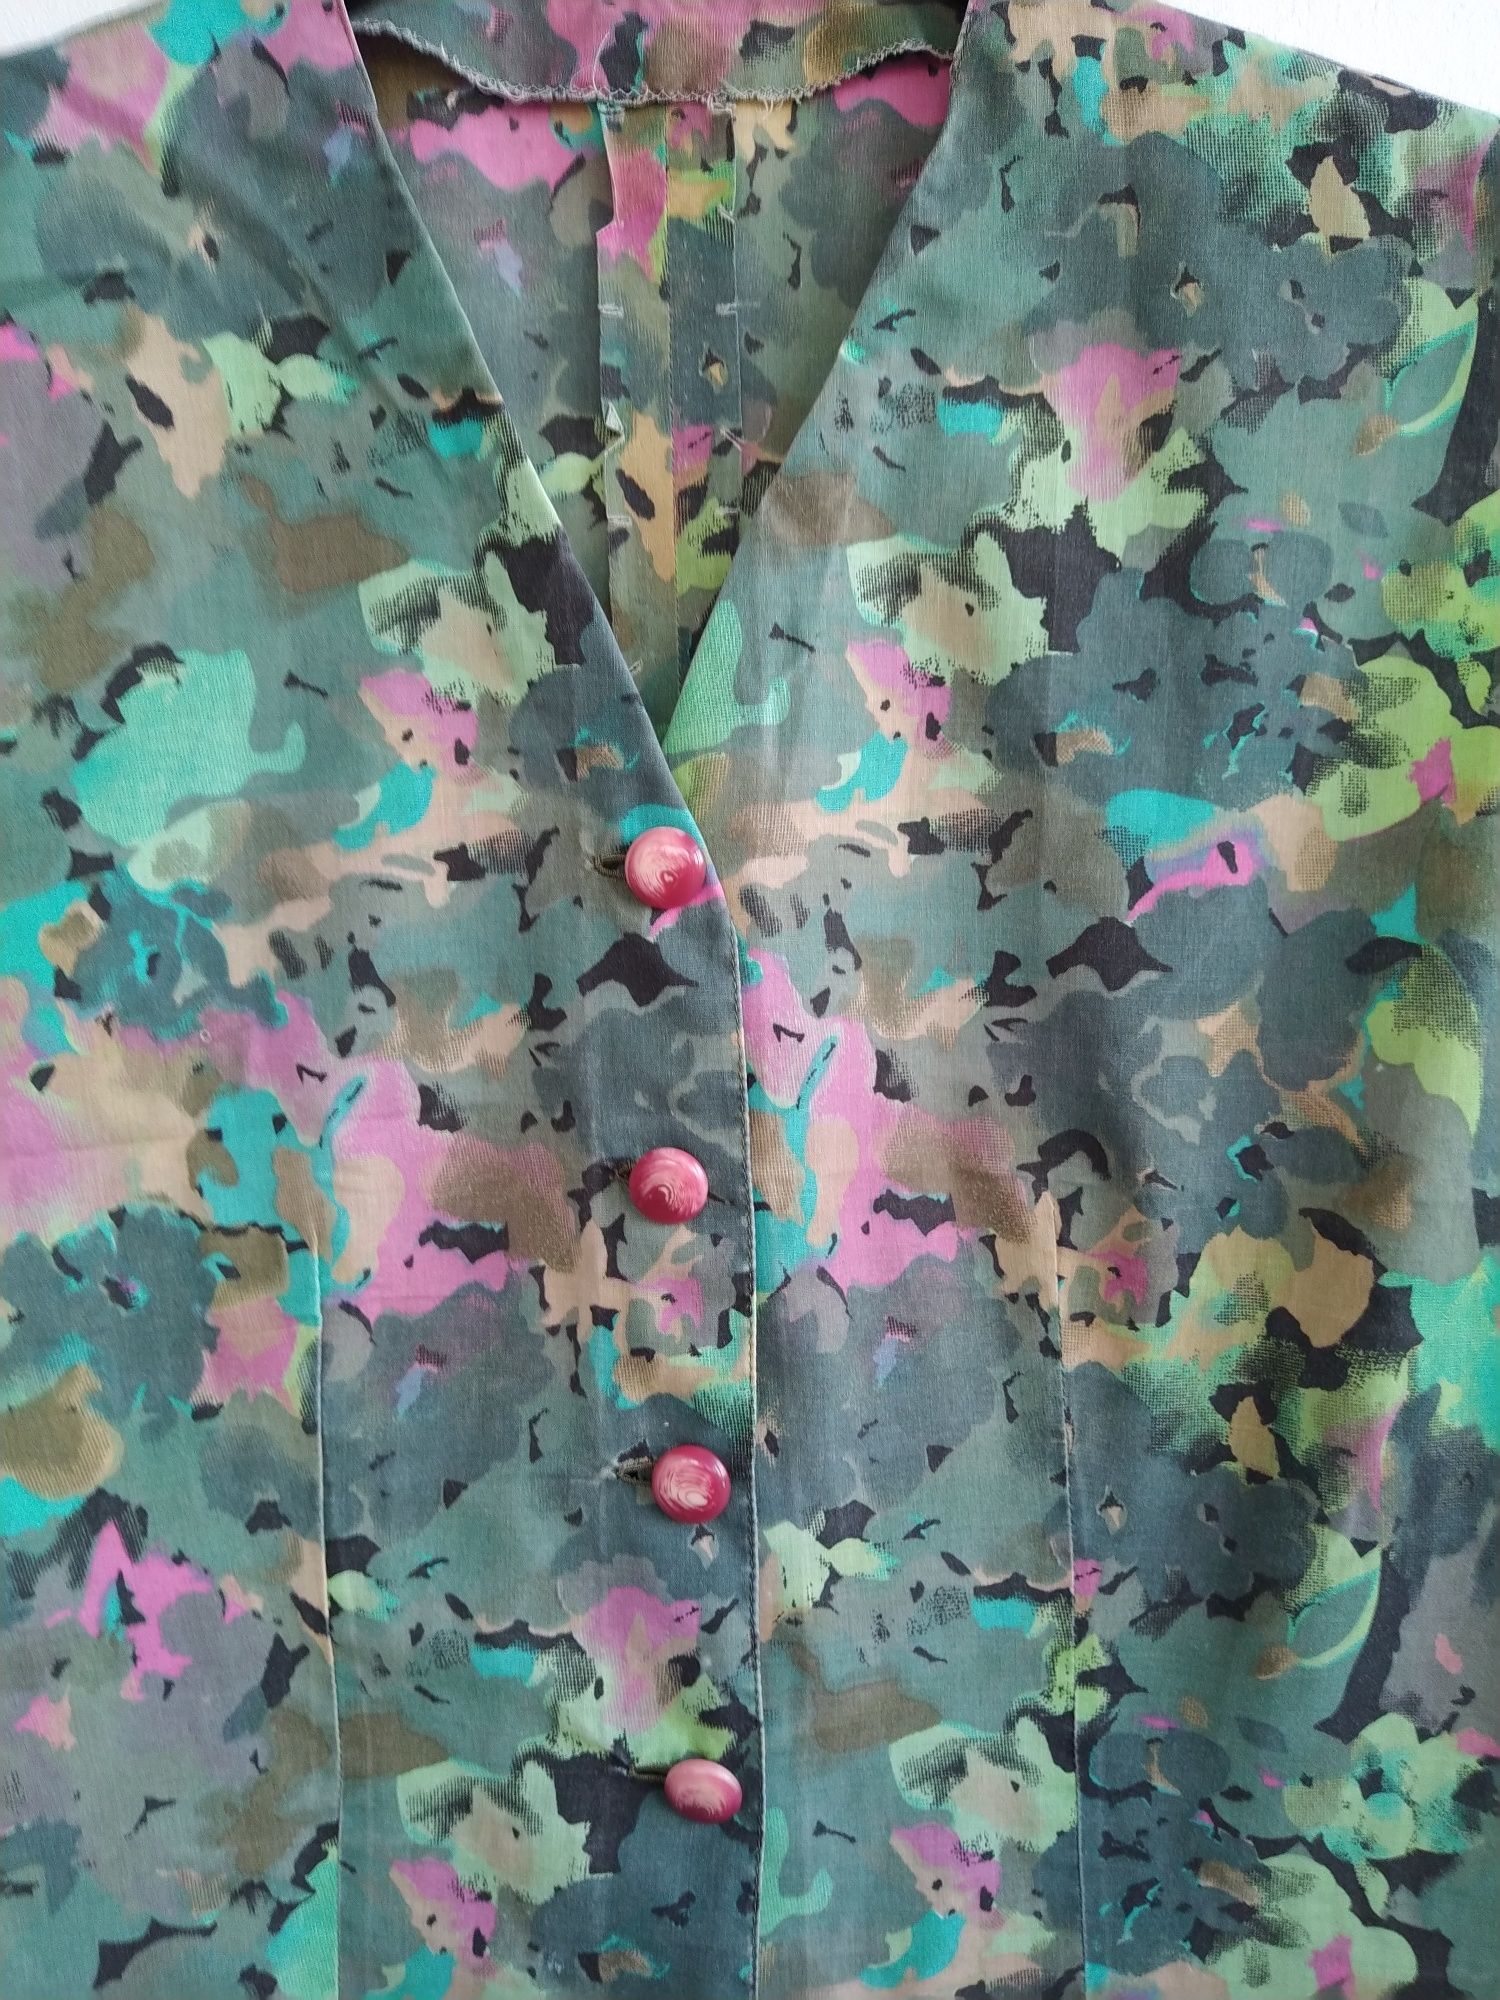 Blusa verde padrão floral - Tamanho L